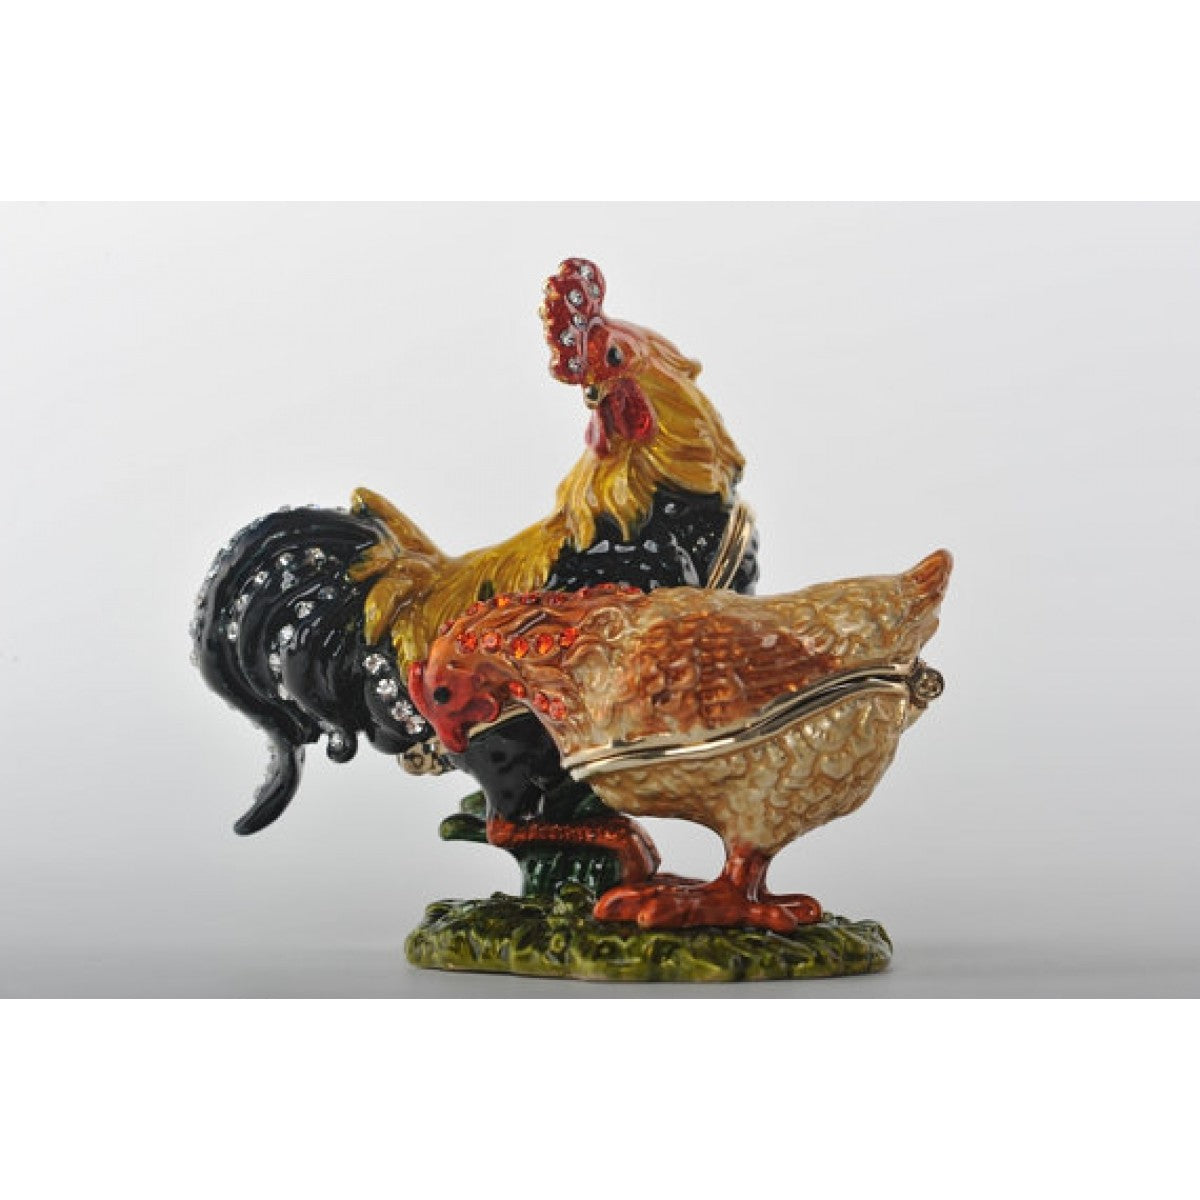 Rooster & Chicken trinket box by Keren Kopal